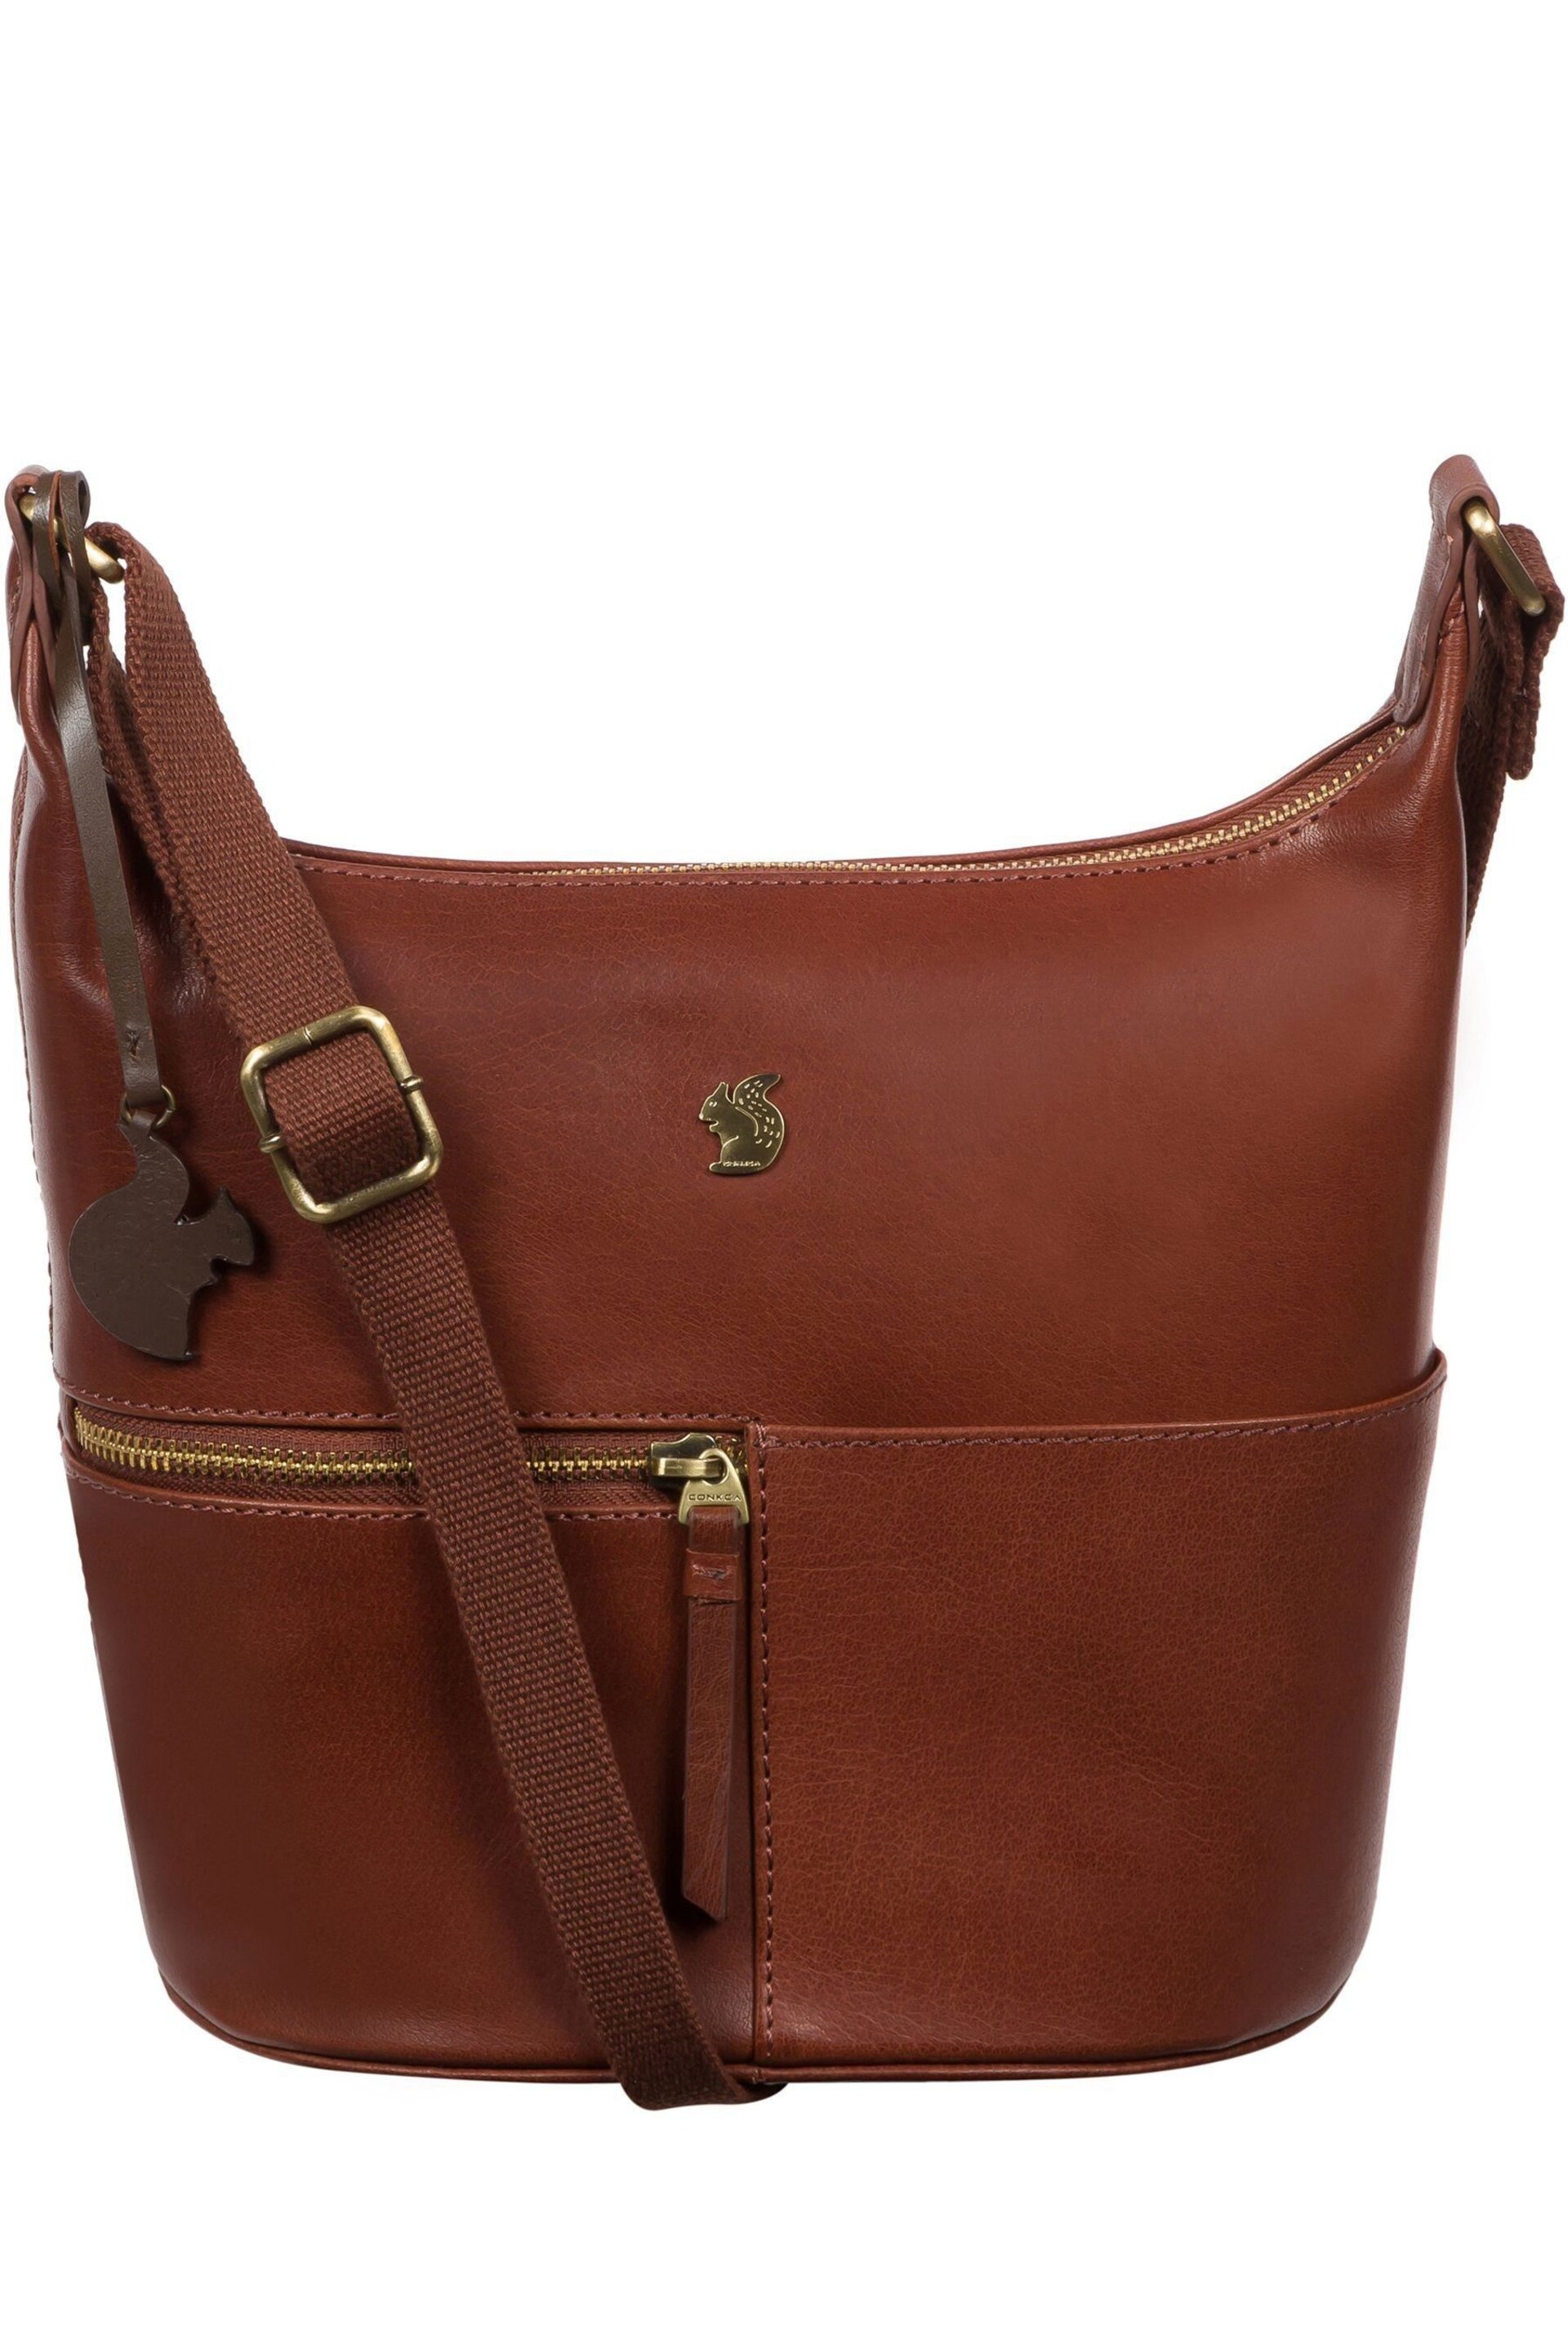 Conkca Little Kristin Leather Shoulder Bag - Image 2 of 6